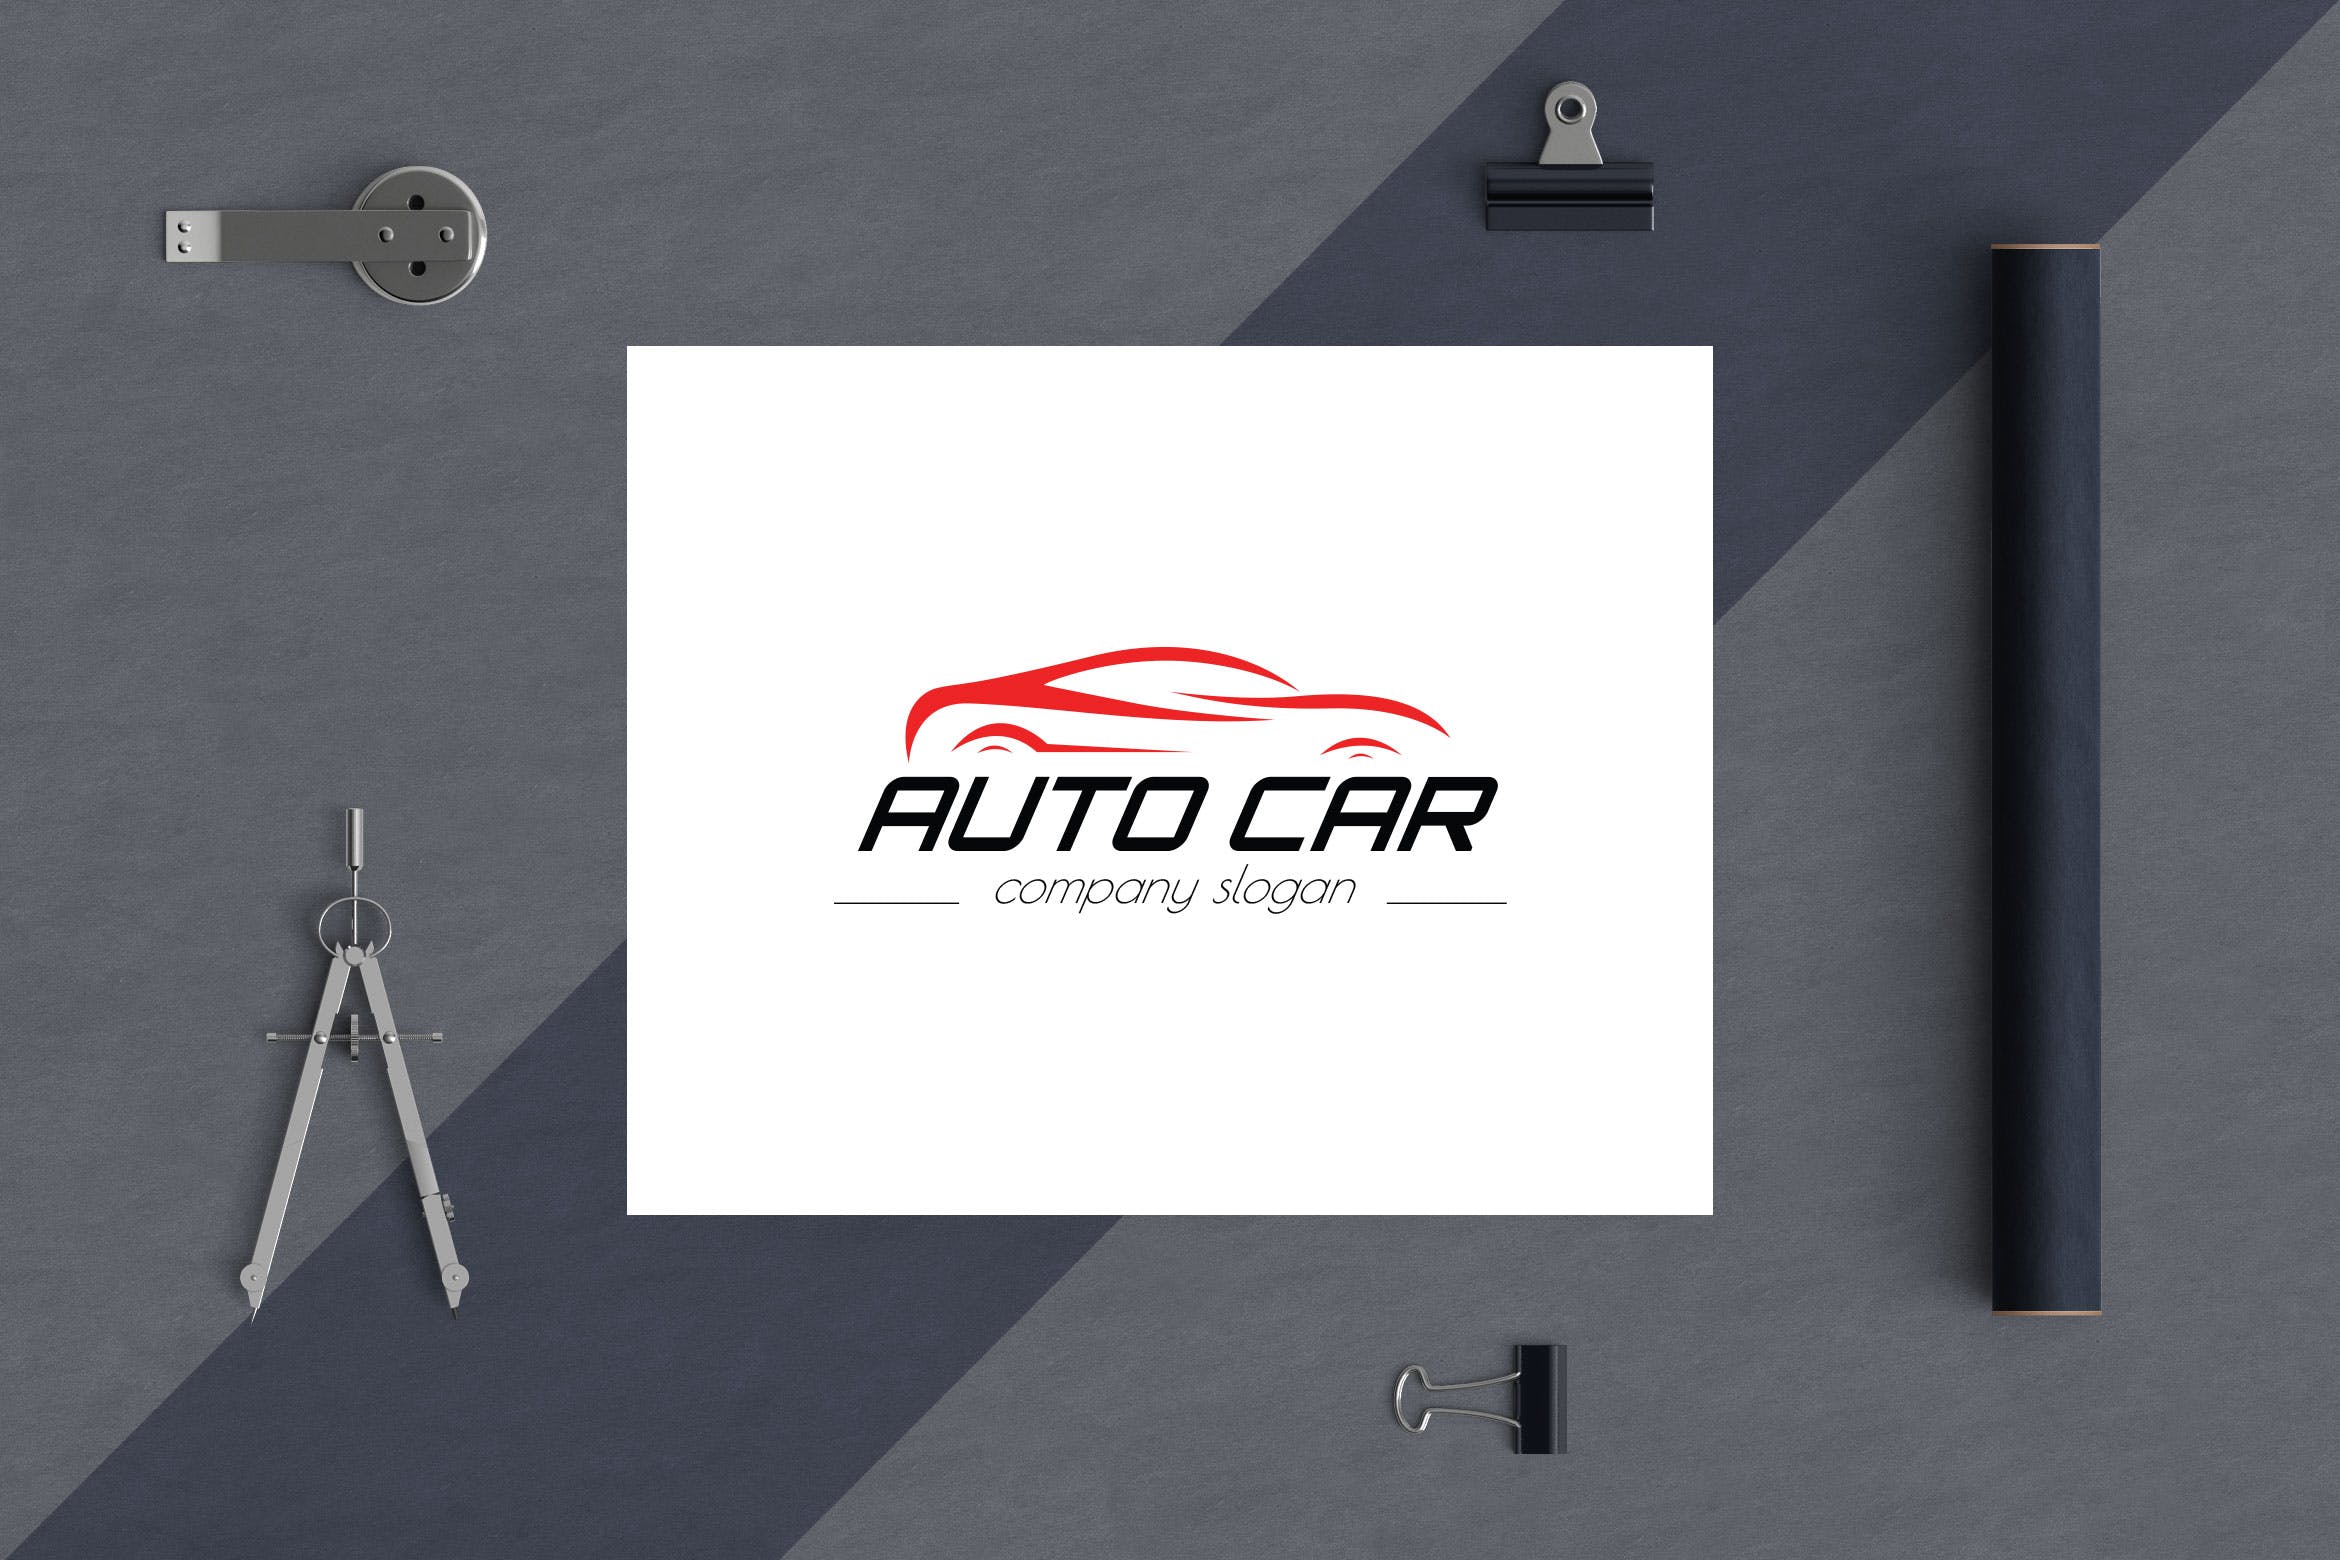 汽车相关企业品牌Logo设计素材库精选模板 Auto Car Business Logo Template插图